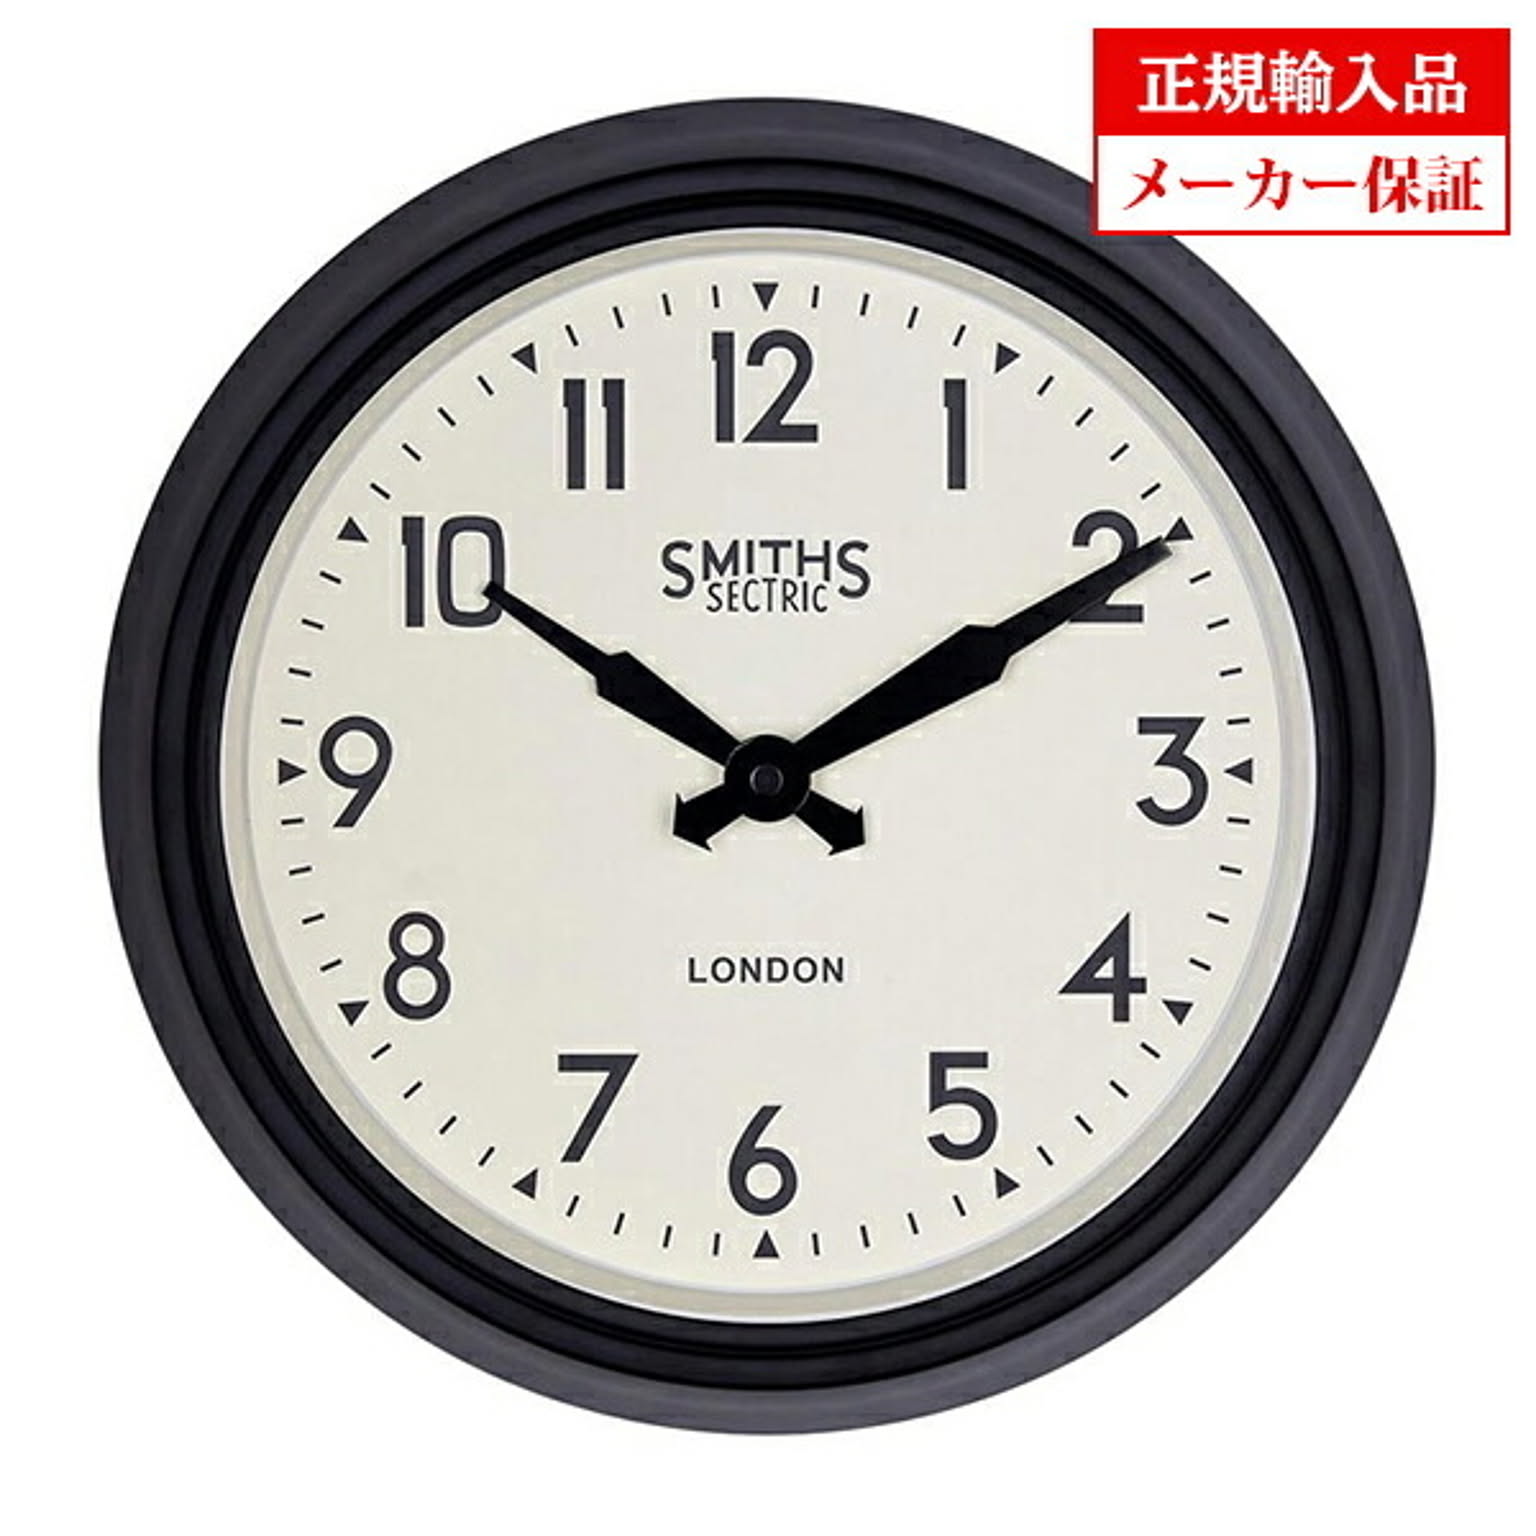 イギリス ロジャーラッセル 掛け時計 [SM/SM/RETRO] ROGER LASCELLES SMiths clocks スミスデザインクロック 正規輸入品